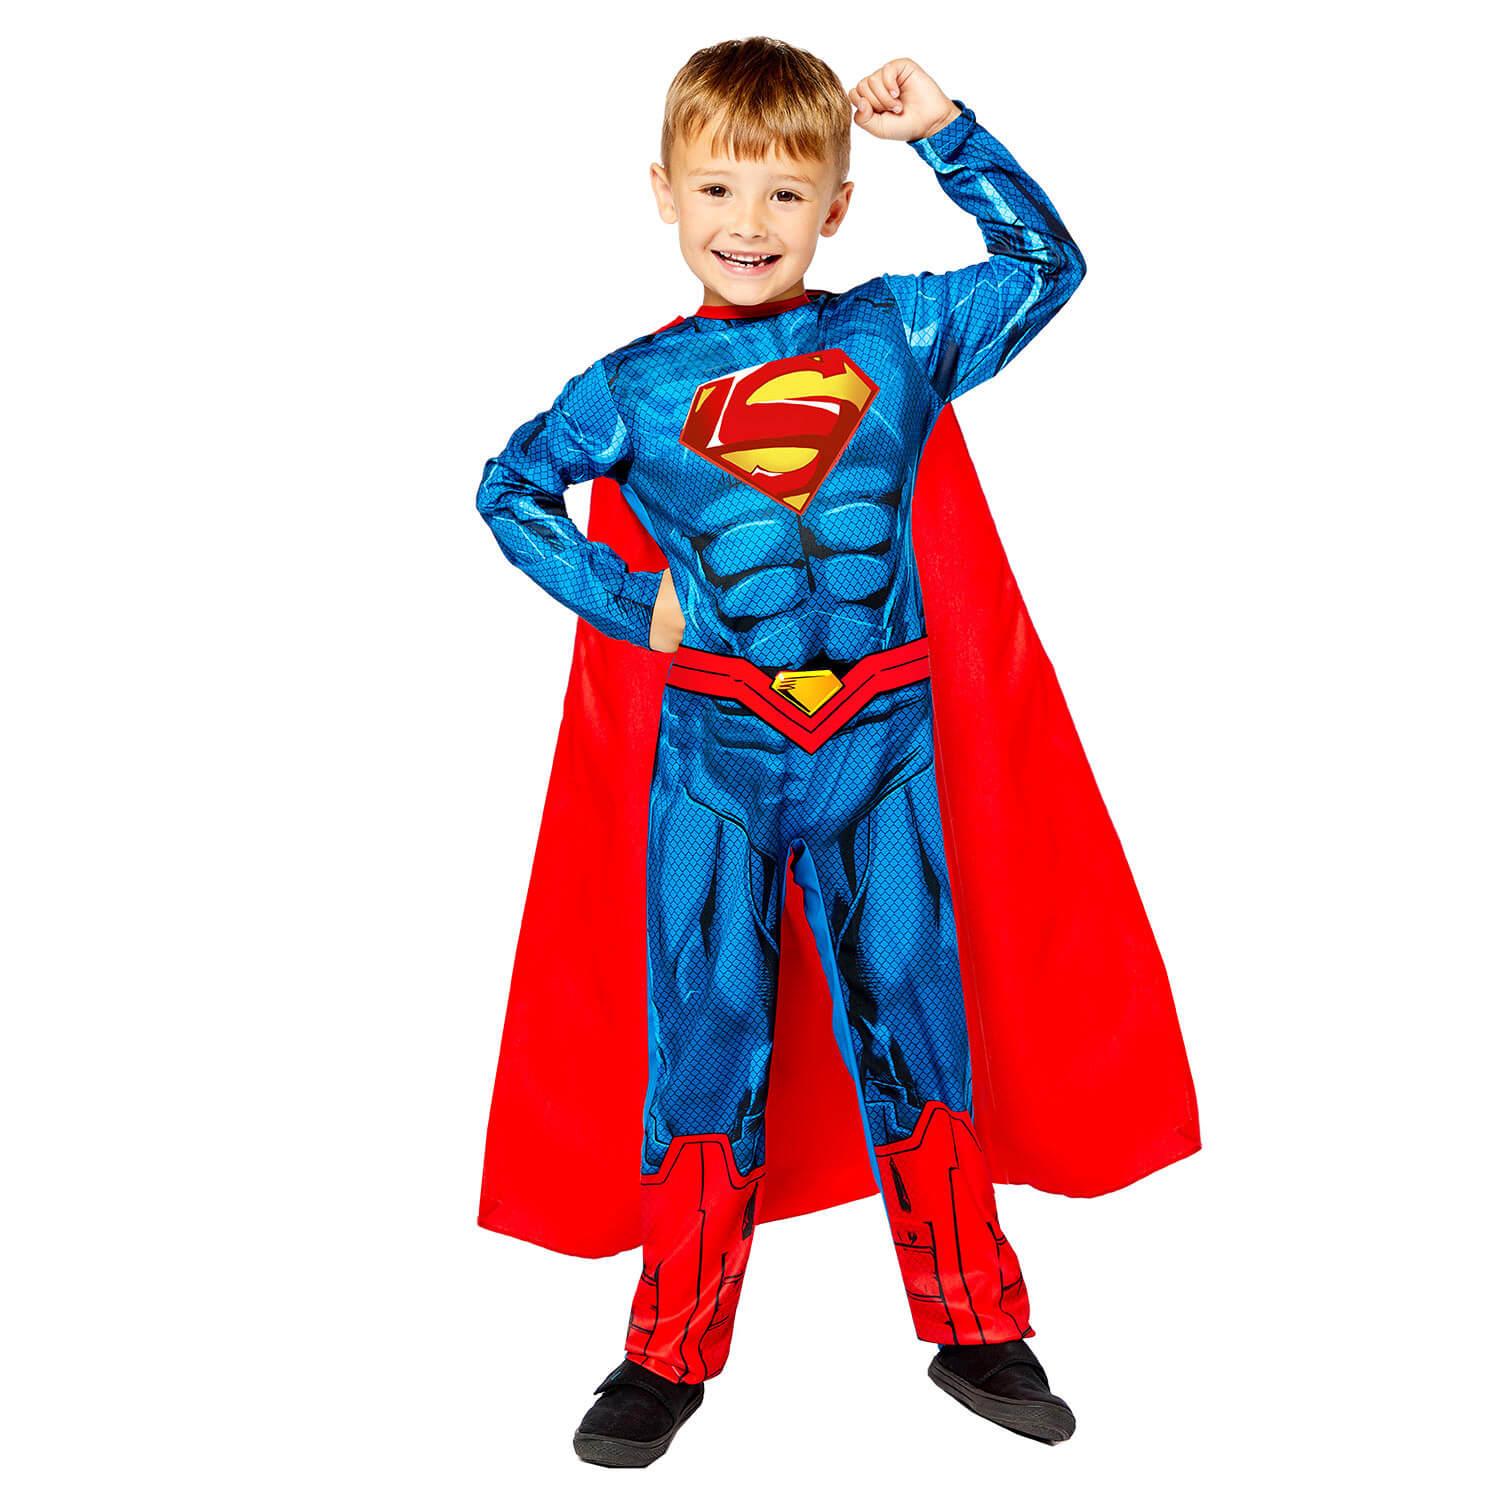 Brave garçon dans un costume de super-héros, portant un cape rouge et un  masque, a tenu sa main. Mignon enfant jouant super-héros. Le concept de  pouvoir et de justice Photo Stock 